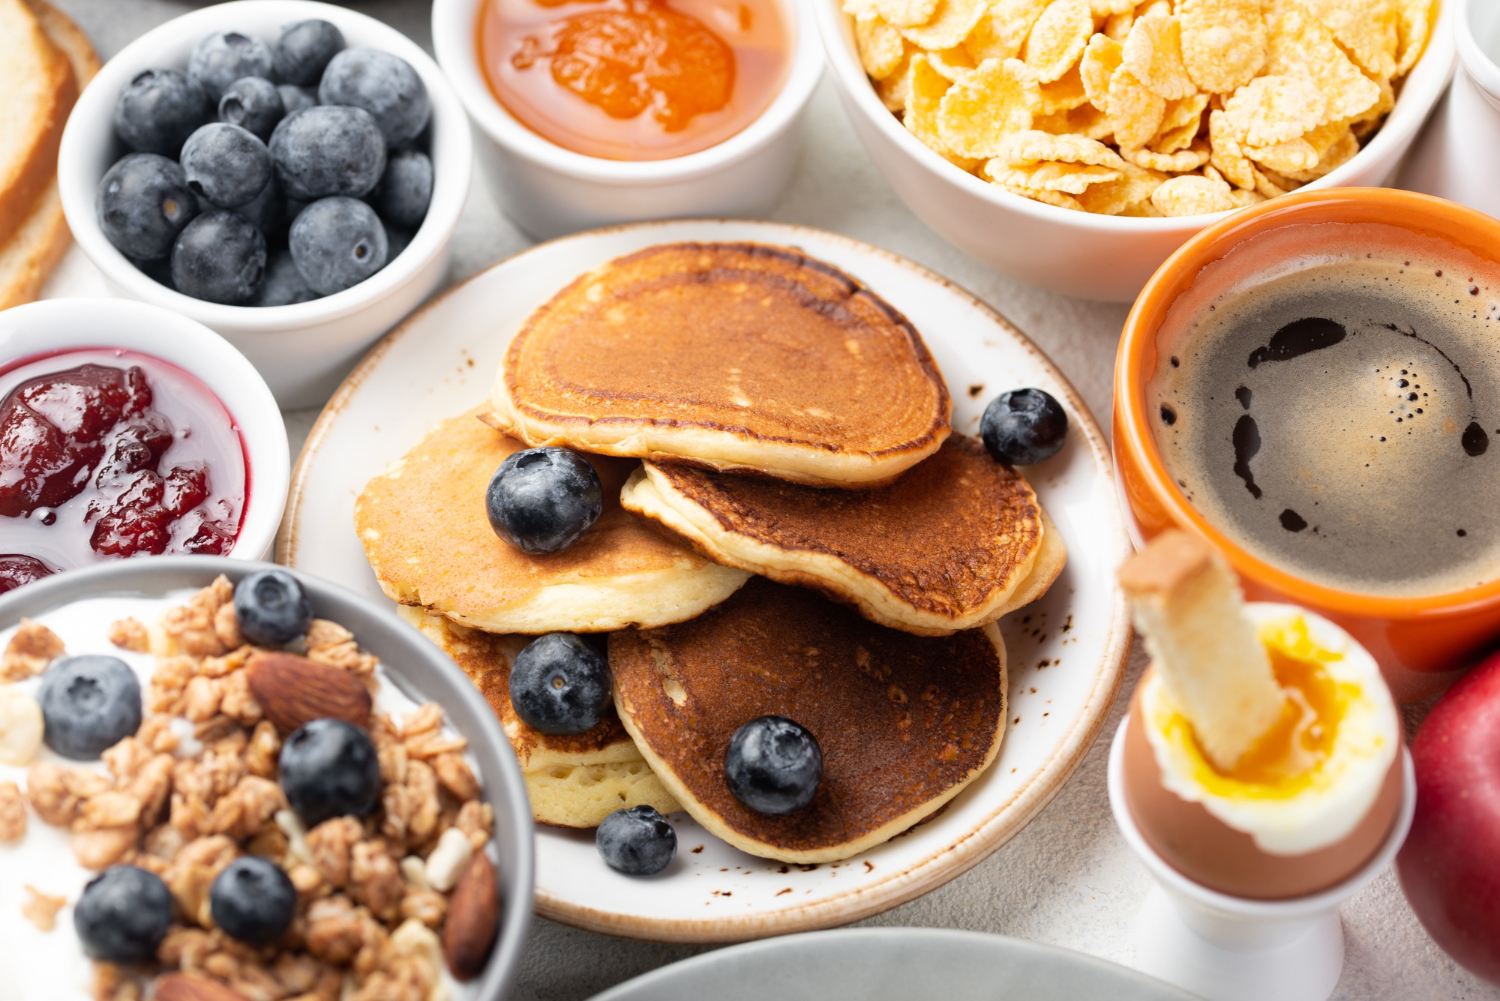 Ile kalorii powinno mieć śniadanie na redukcji?